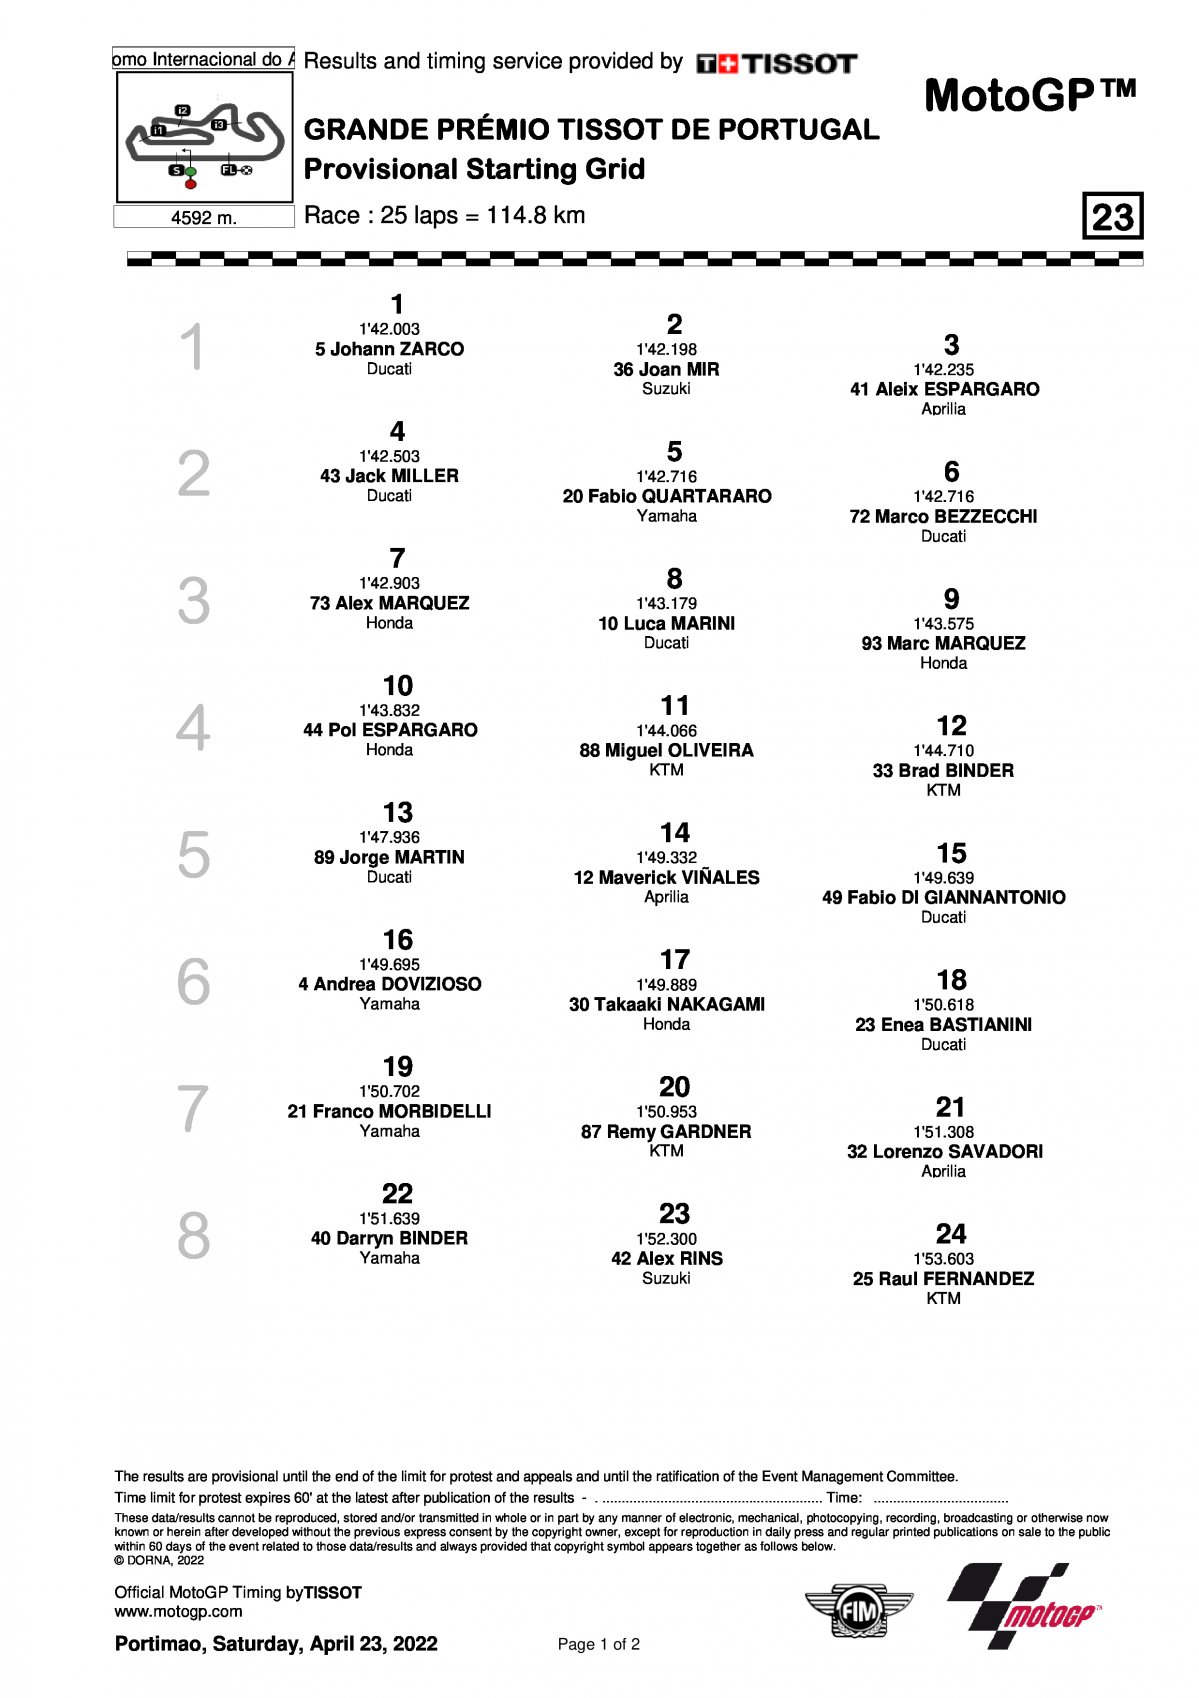 Стартовая решетка Гран-При Португалии MotoGP (24/04/2022)